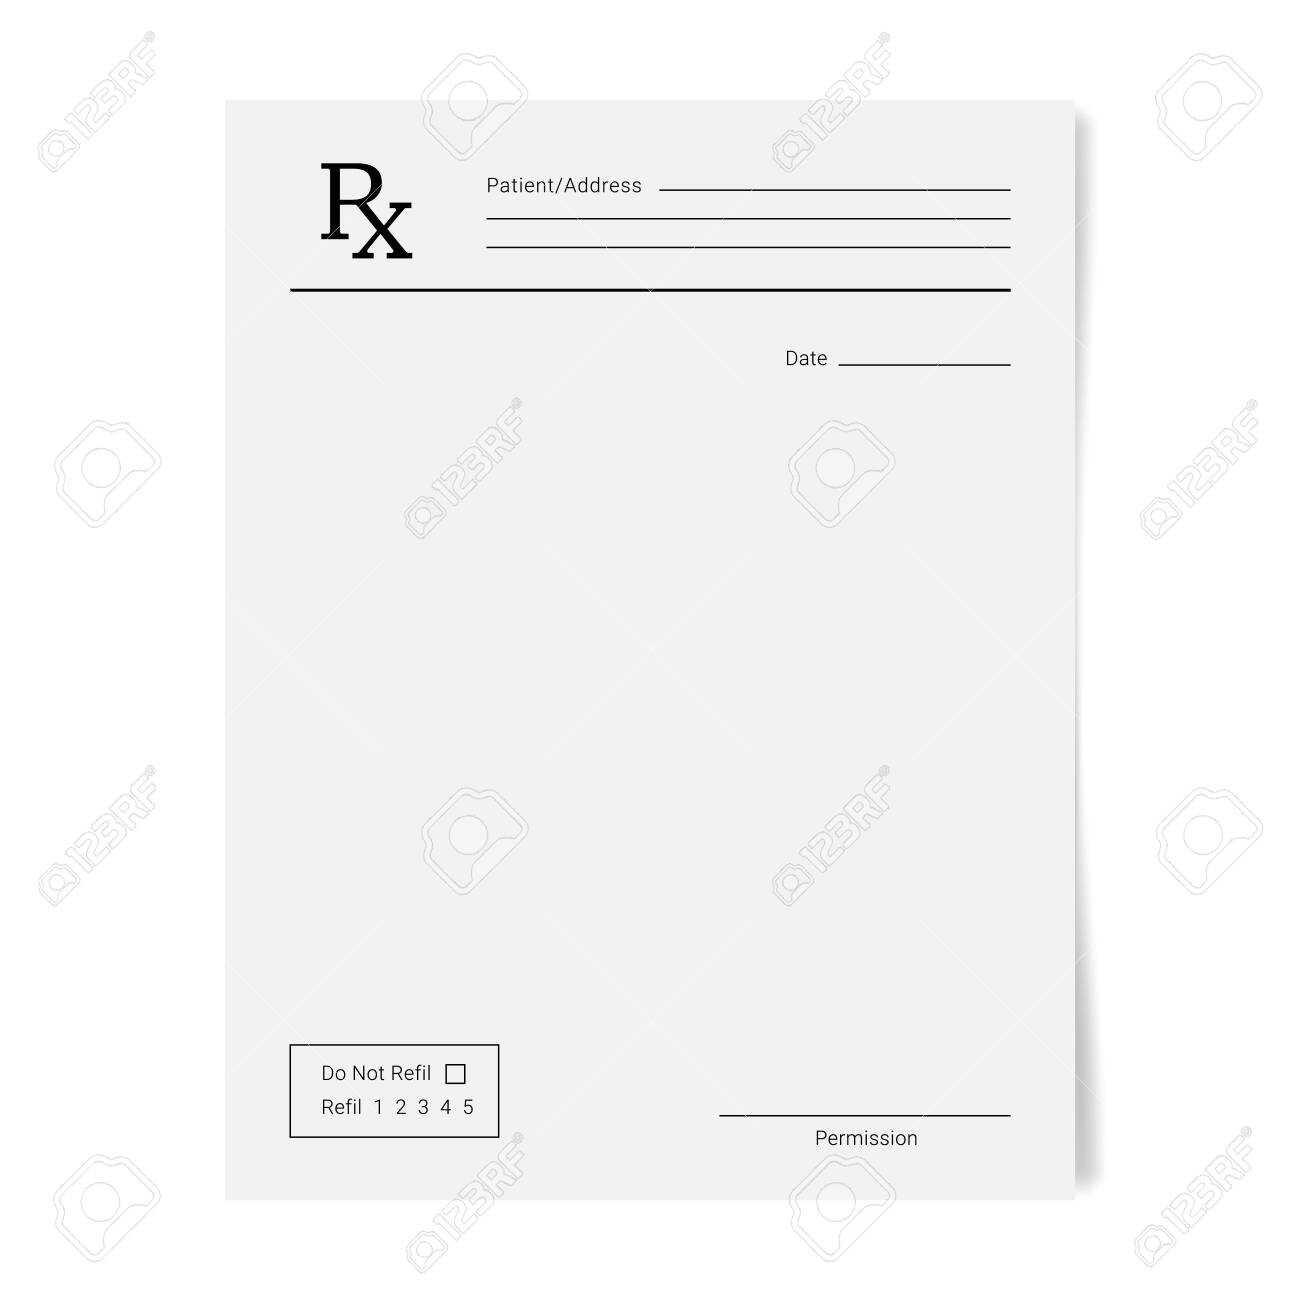 Rx Pad Template. Medical Regular Prescription Form Regarding Blank Prescription Form Template